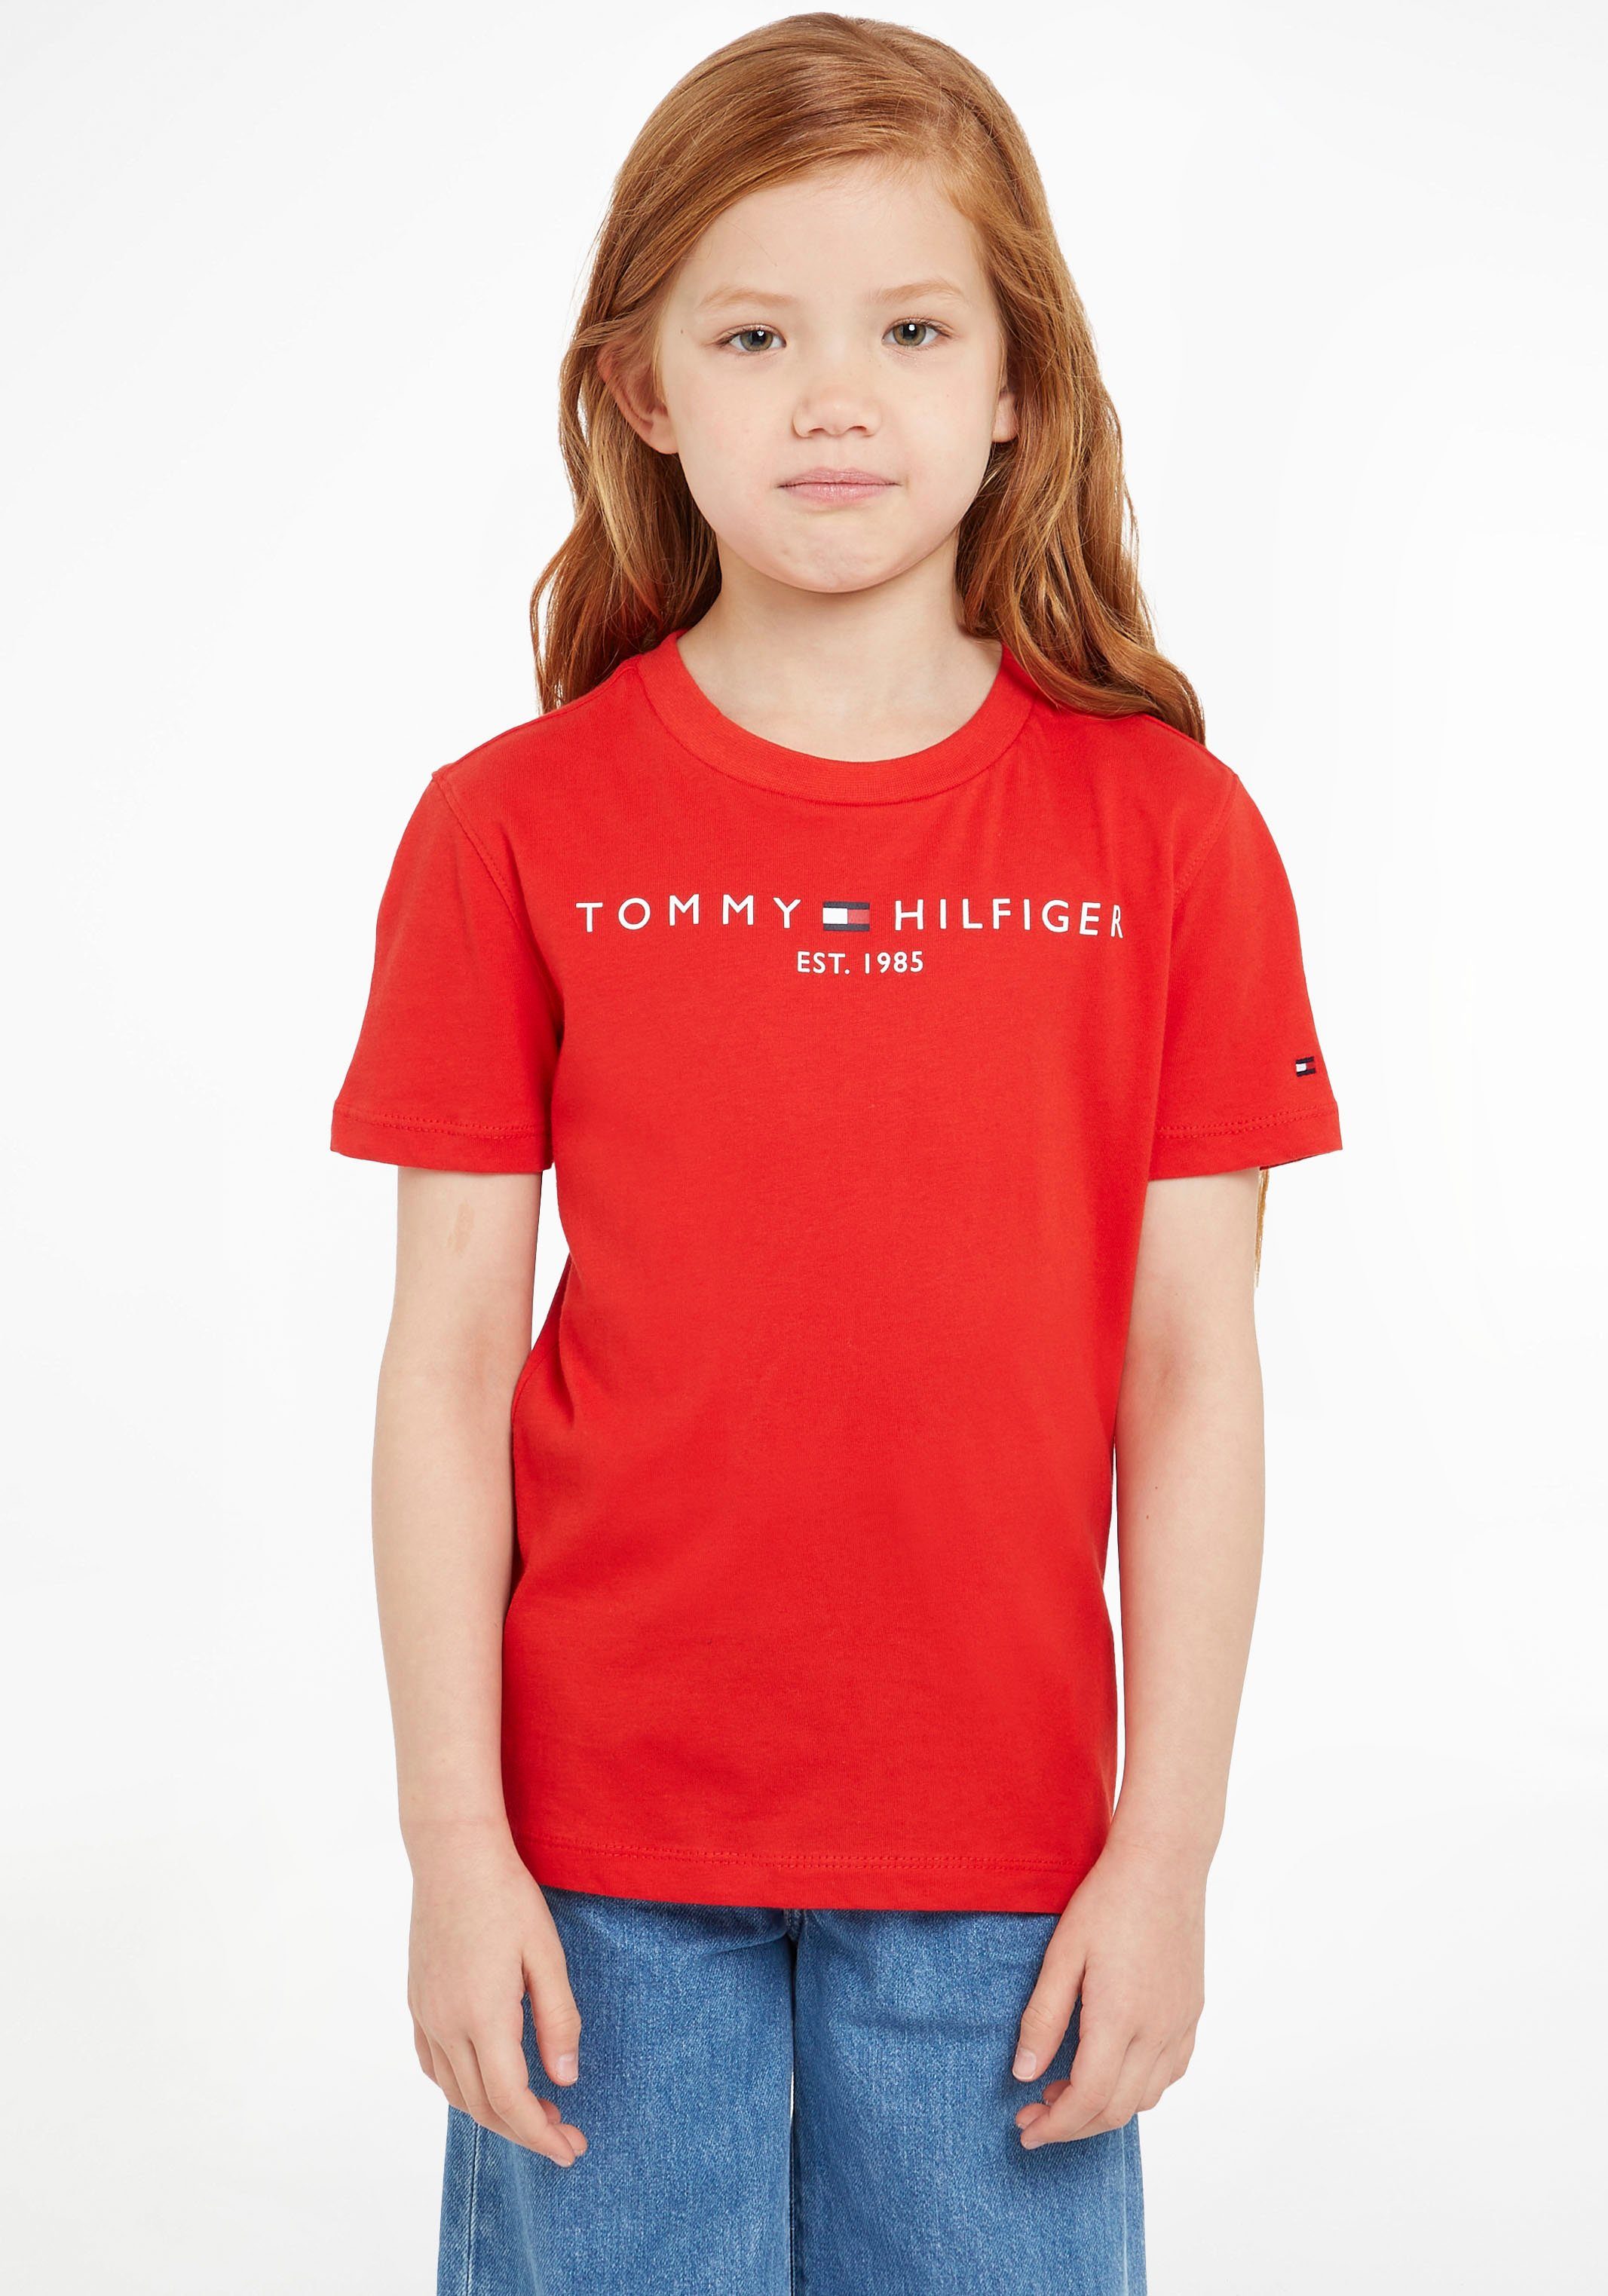 Tommy Hilfiger T-Shirt ESSENTIAL TEE Kinder Kids Junior MiniMe,für Jungen  und Mädchen, Hinten am Ausschnitt mit kleinem Flaglabel